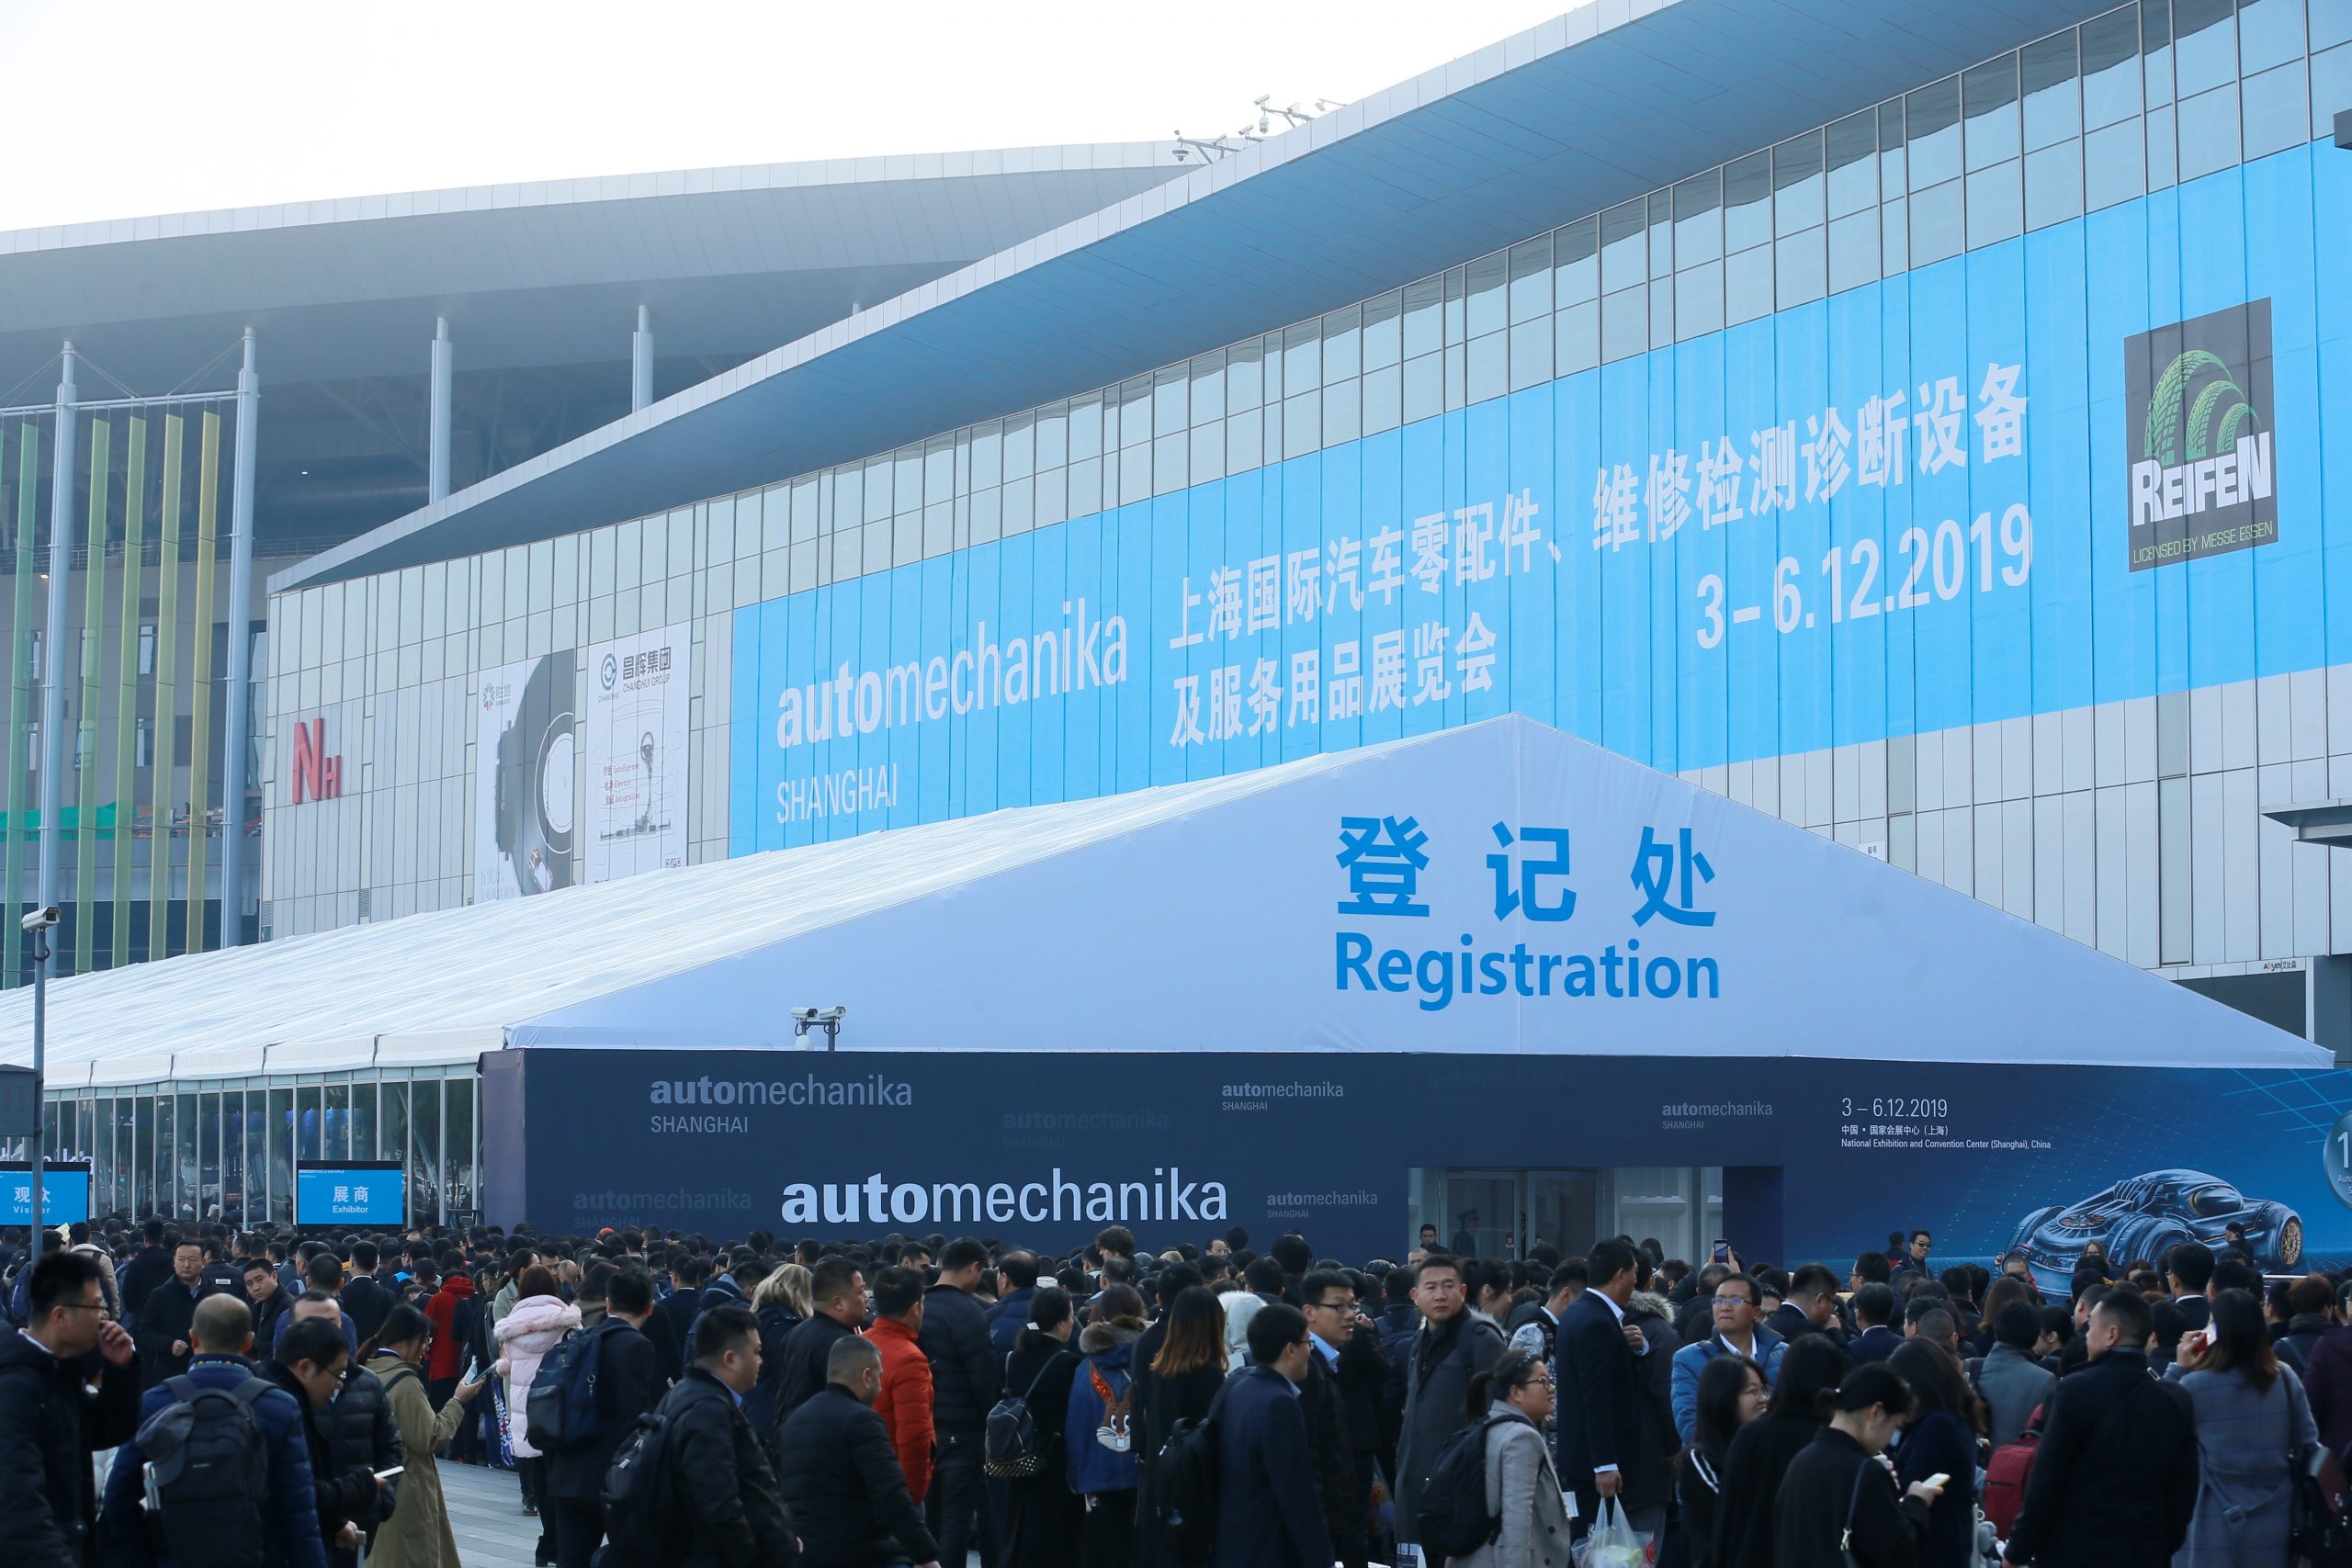 Automechanika Shanghai On In 2 Weeks - Visit Online